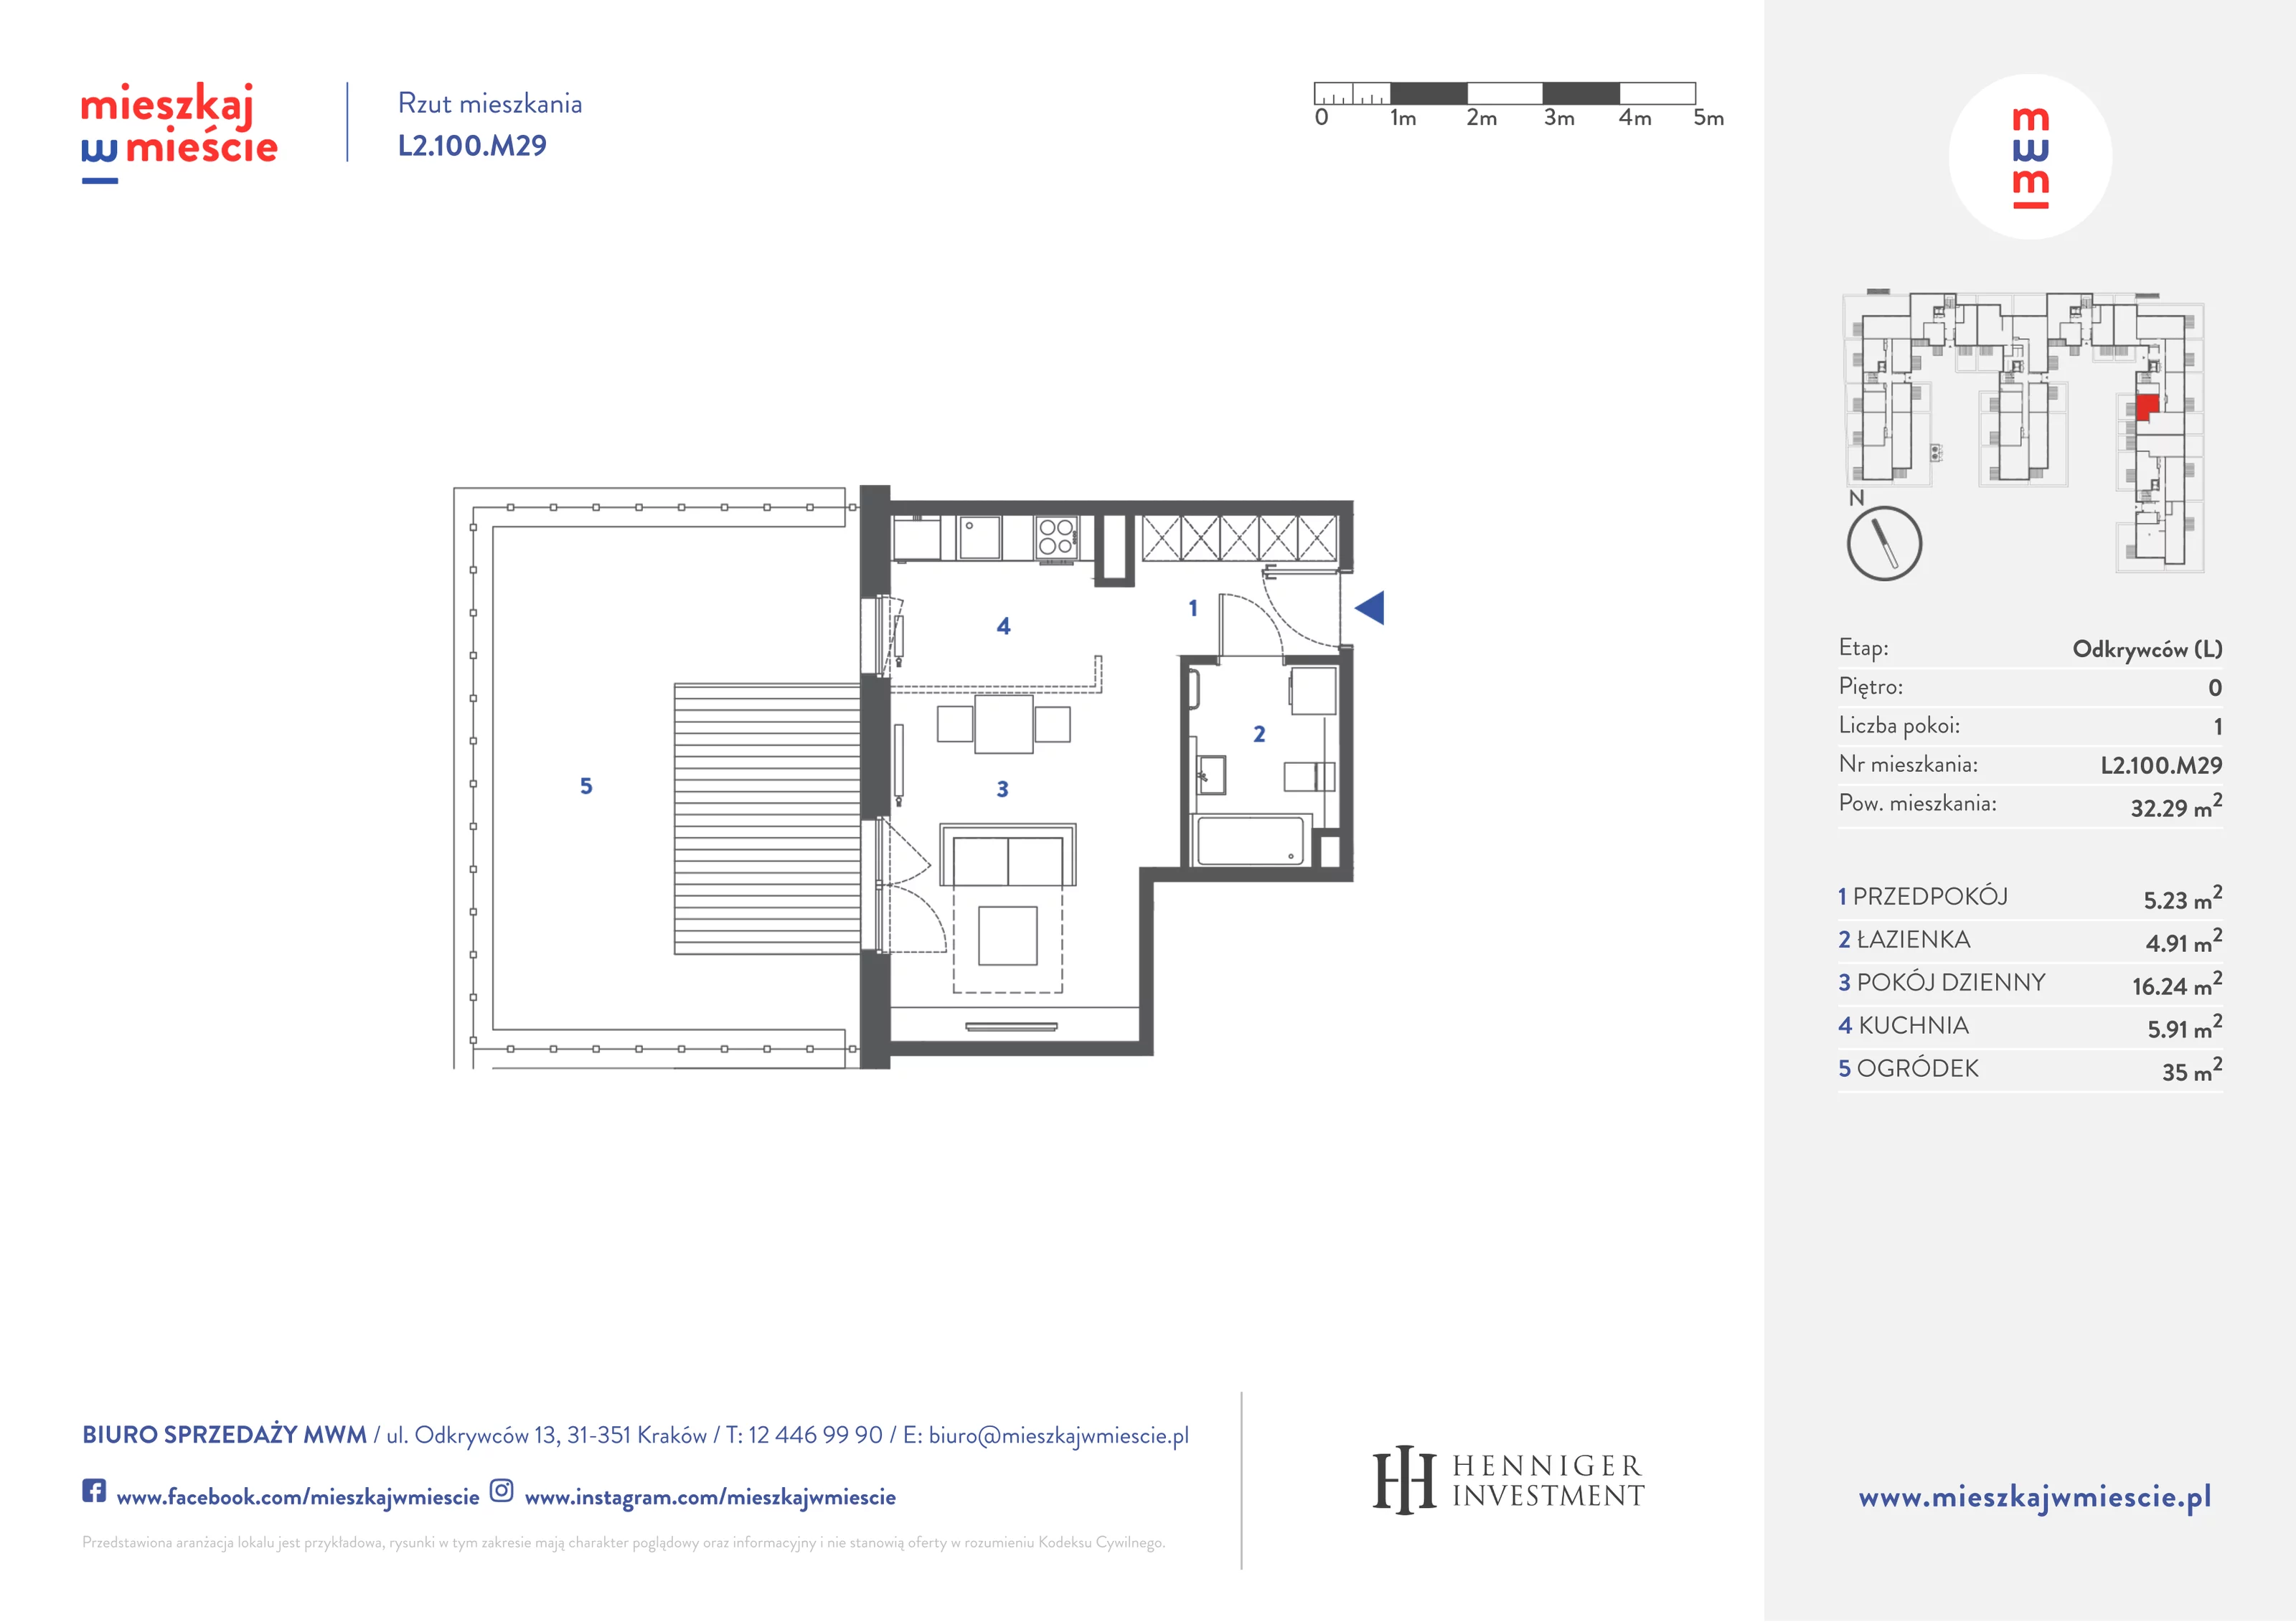 Mieszkanie 32,41 m², parter, oferta nr L2.100.M29, Mieszkaj w Mieście - Odkrywców L, Kraków, Bronowice, ul. Wizjonerów